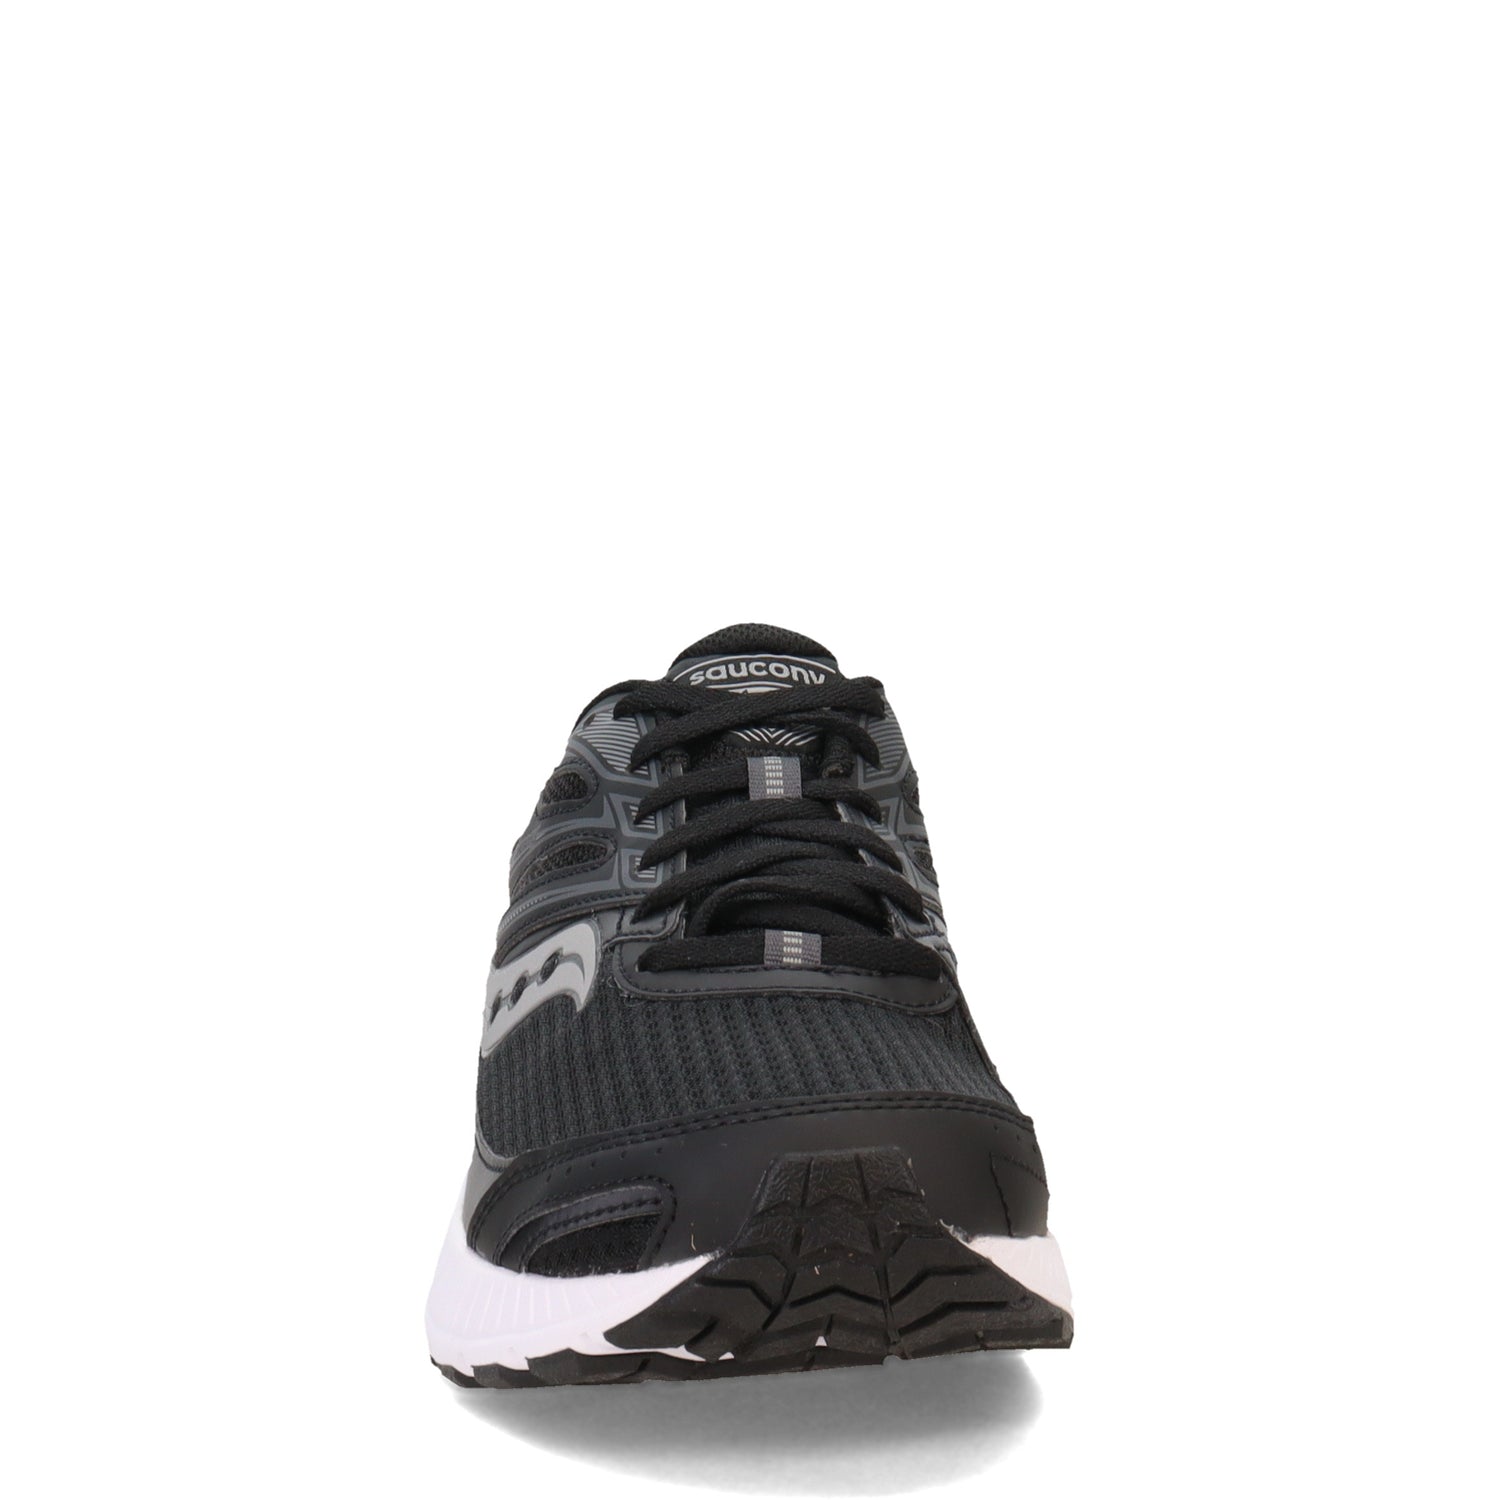 Peltz Shoes  Men's Saucony Cohesion 13 Running Shoe - Wide Width BLACK  WHITE S20560-1